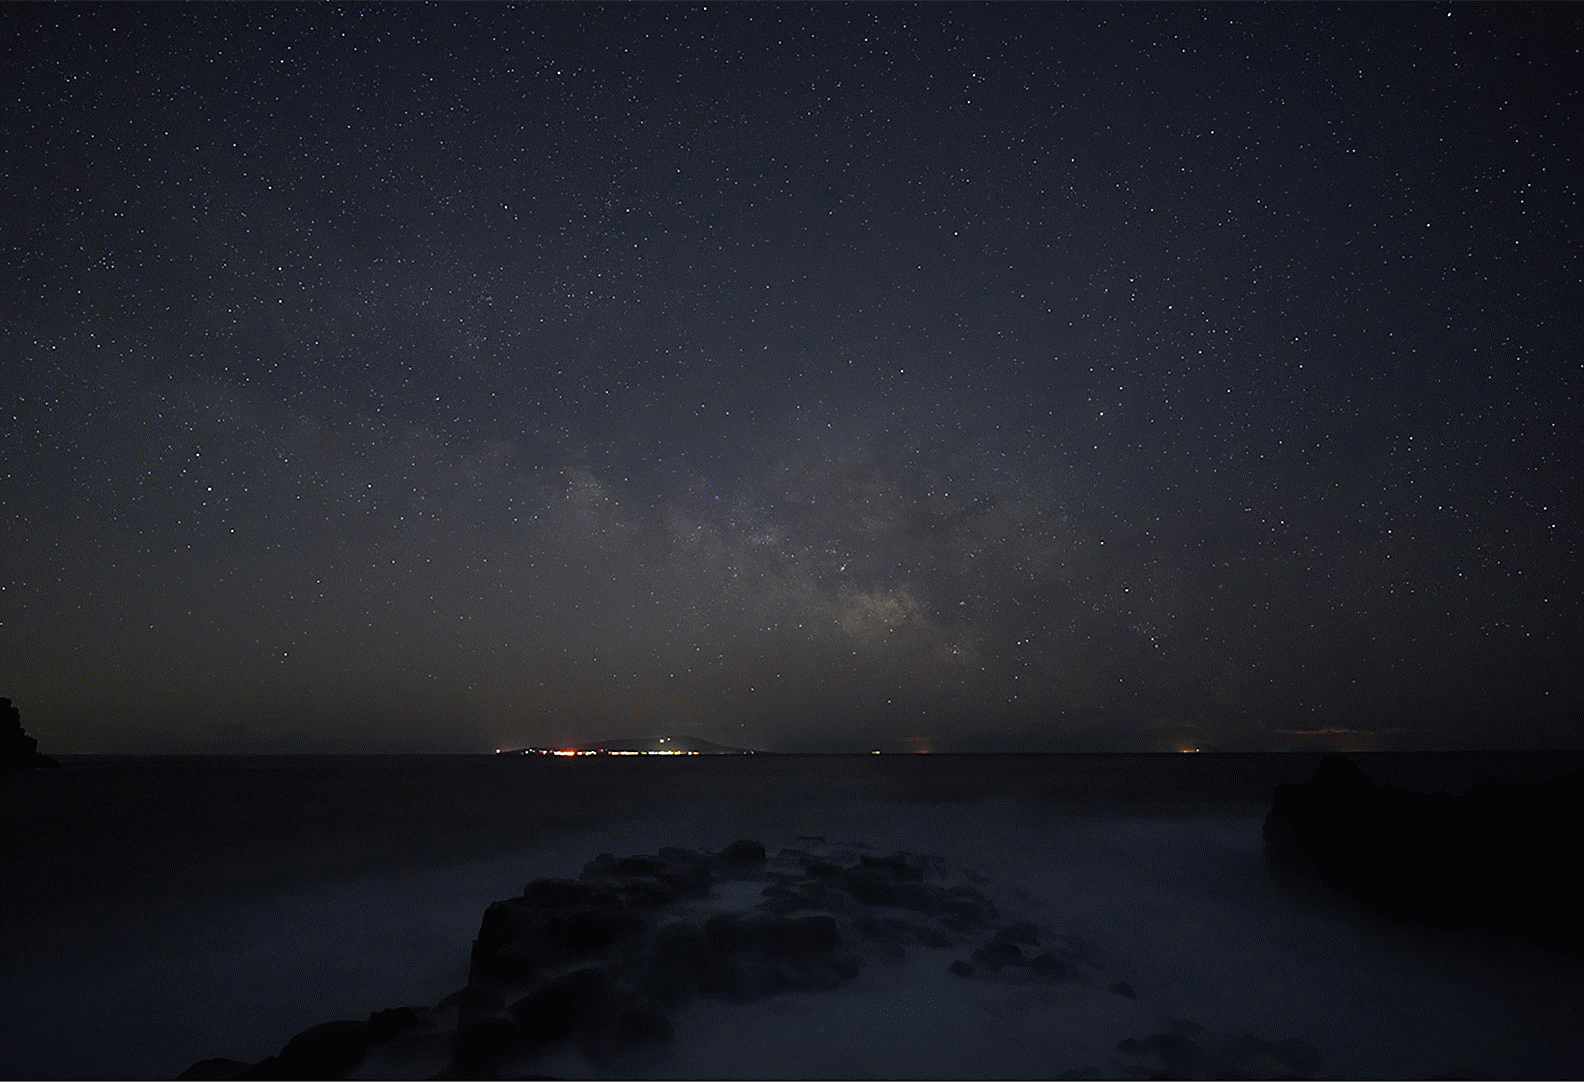 صور نجوم تُظهر مجرة درب التبانة فوق البحر